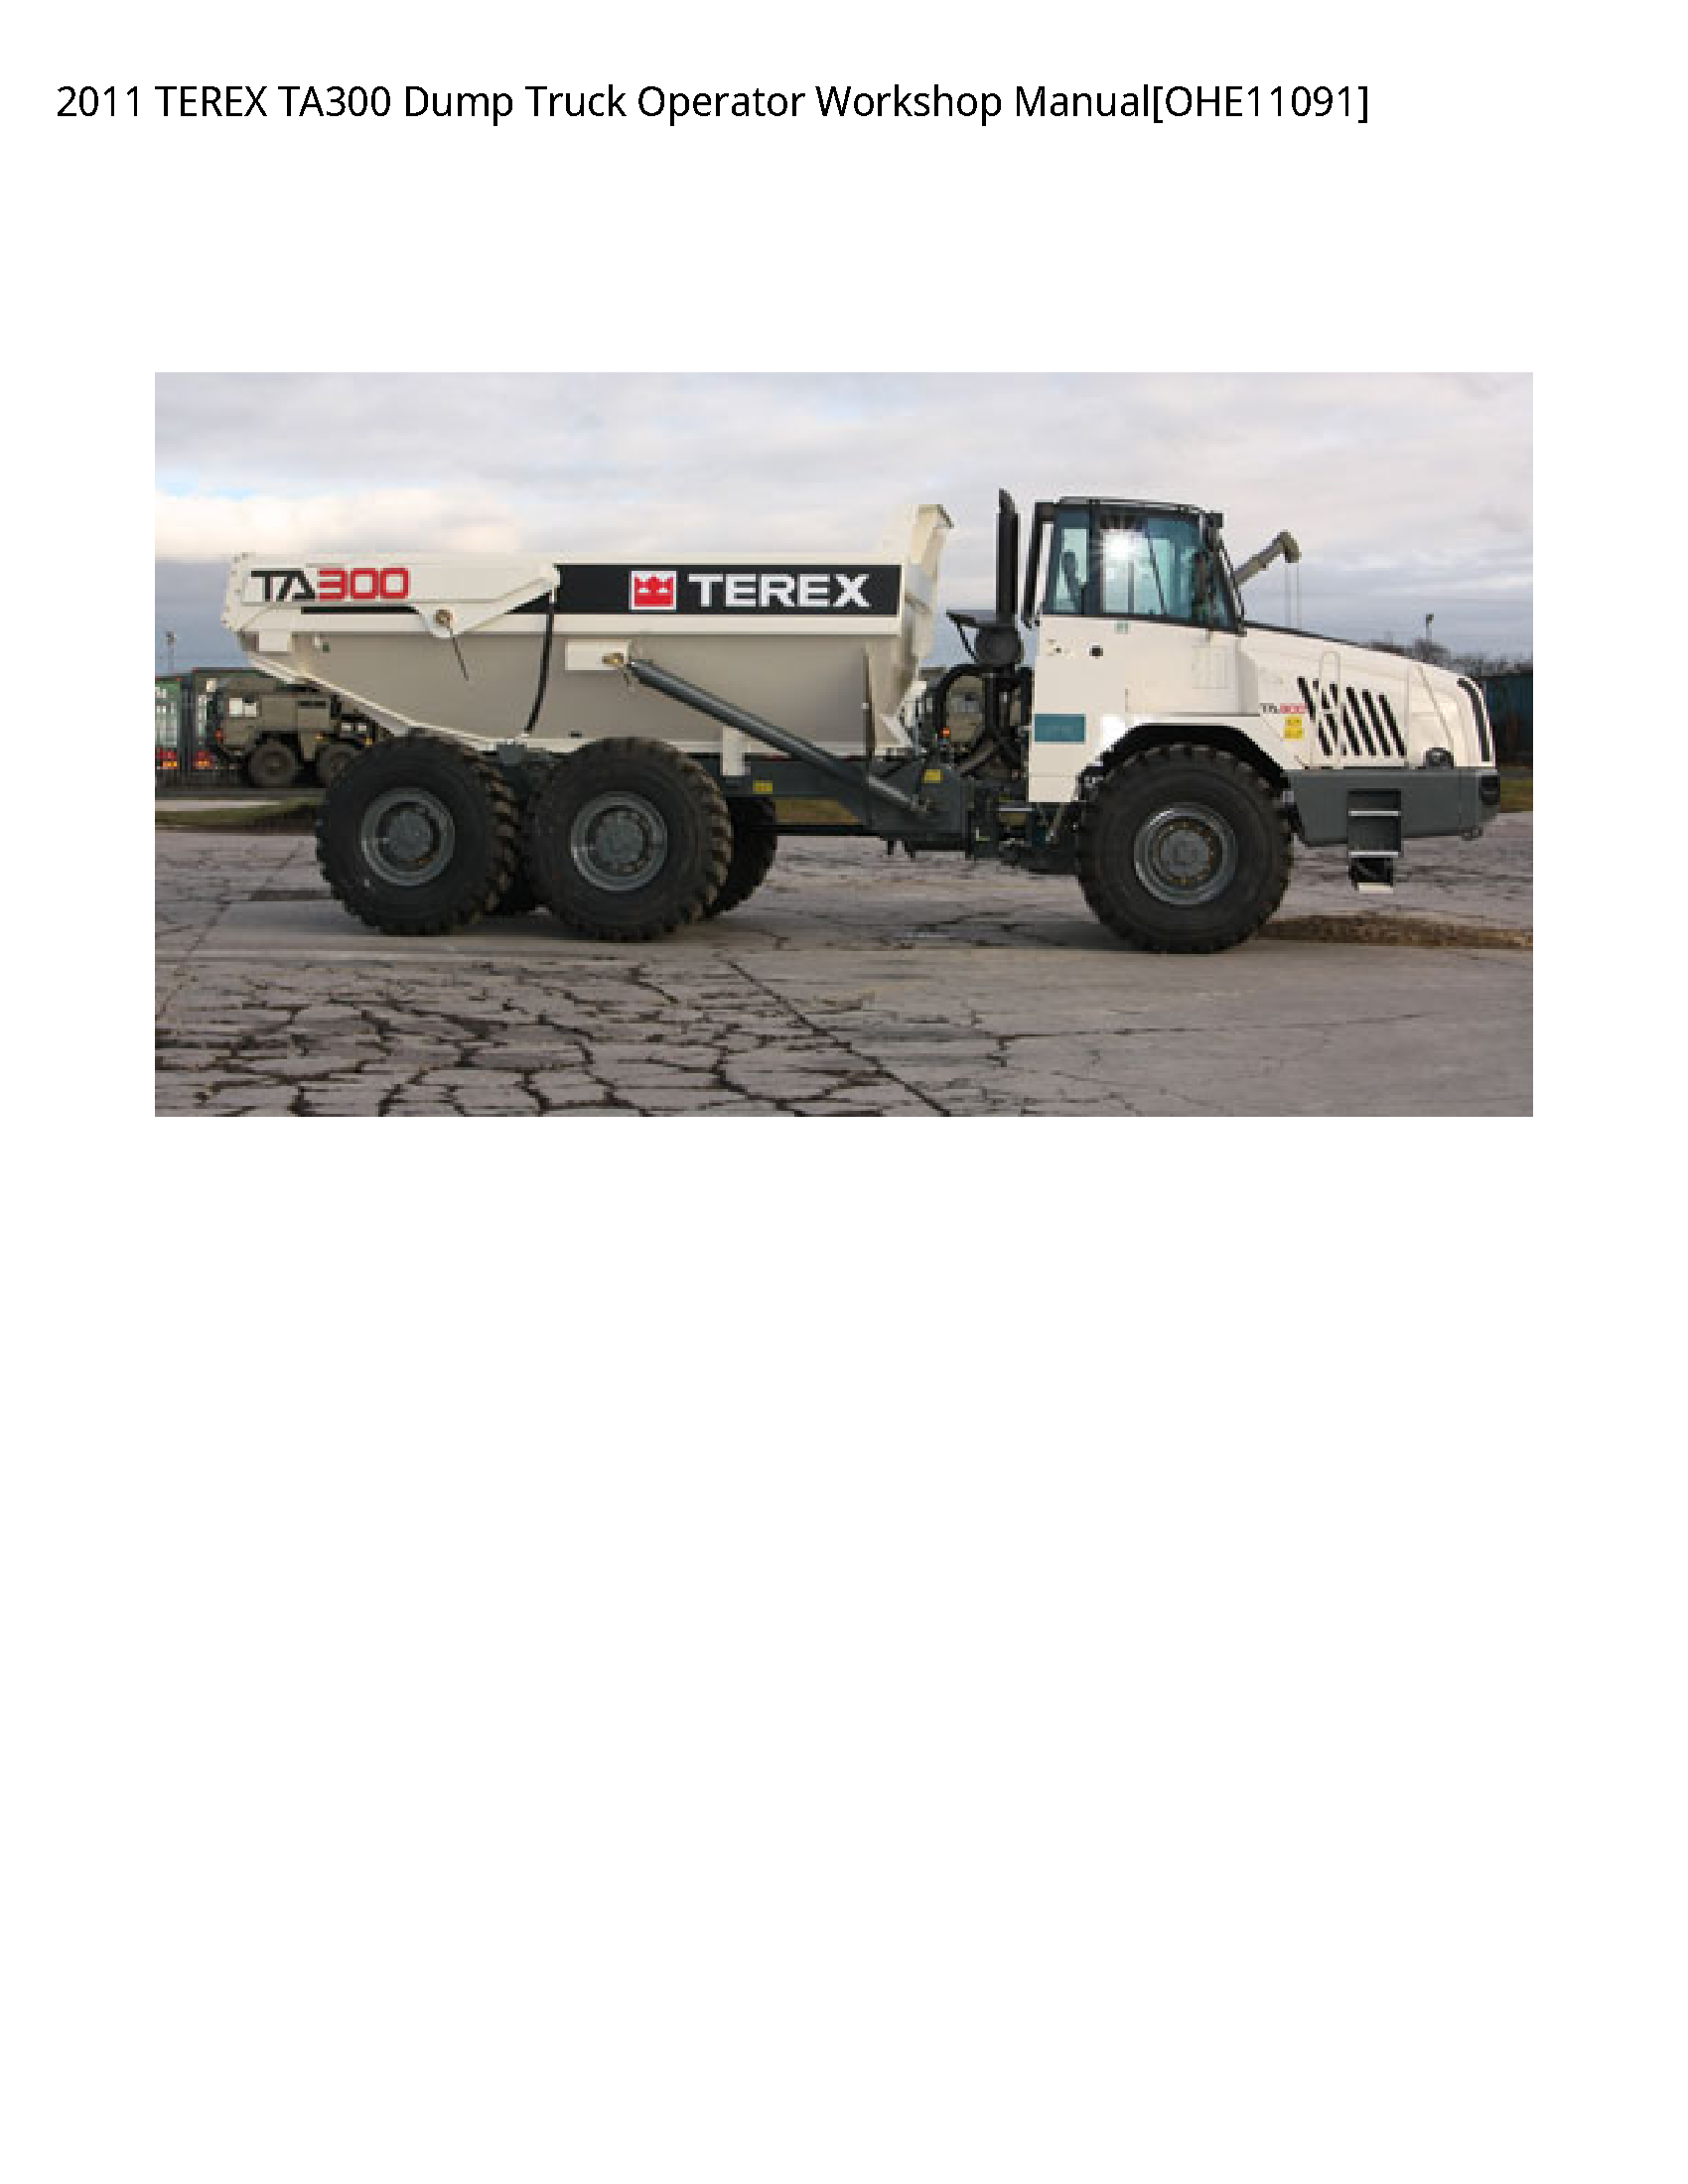 Terex TA300 Dump Truck Operator manual